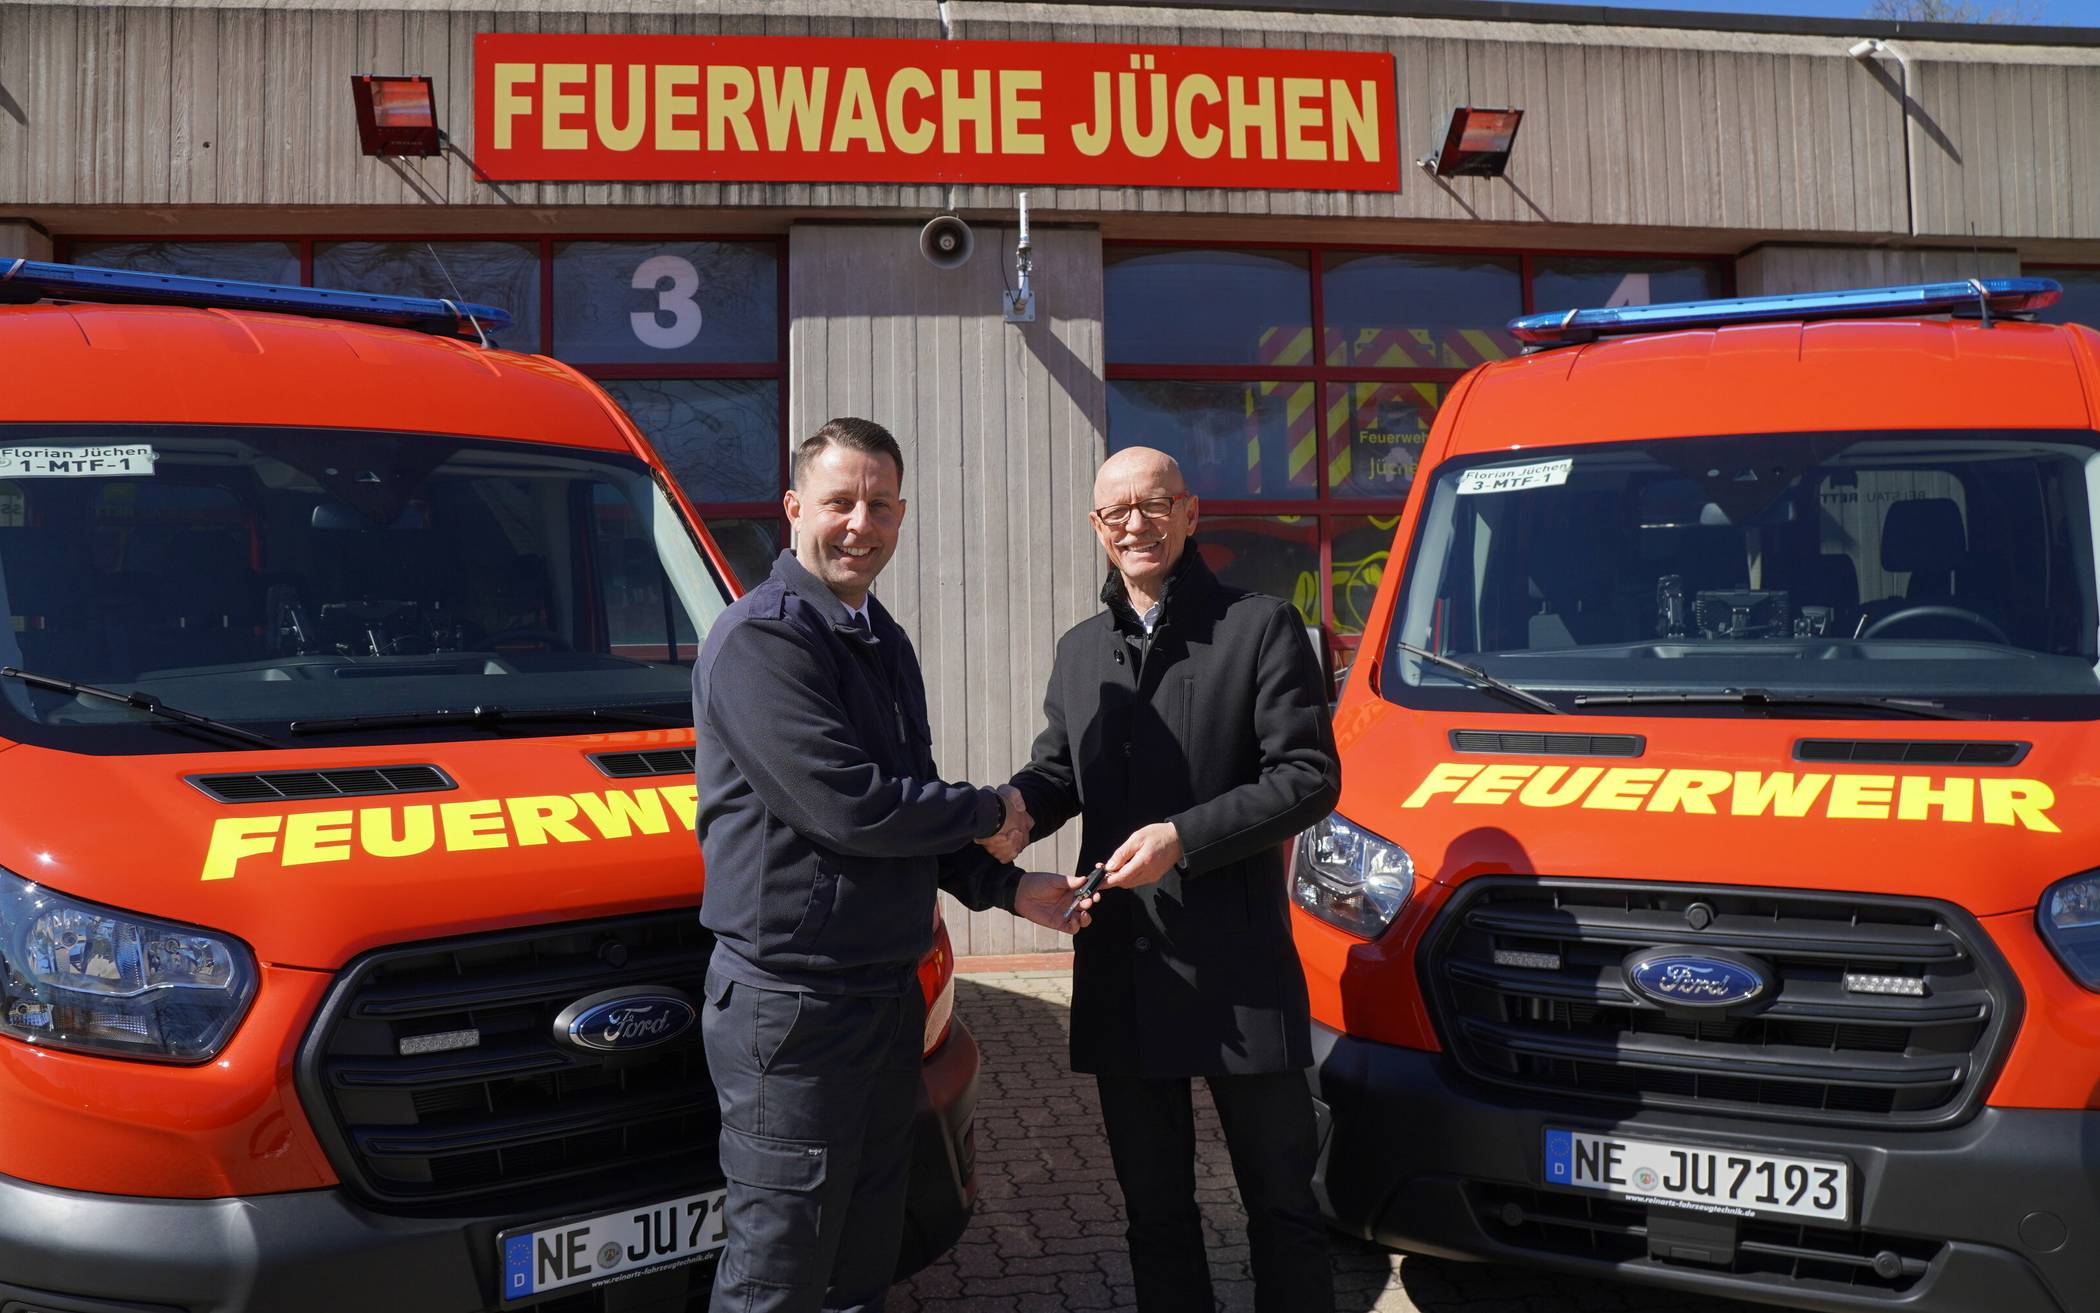  Bürgermeister Harald Zillikens (r.) übergab Feuerwehr-Chef Heinz-Dieter Abels die neuen Mannschaftstransportfahrzeuge.  